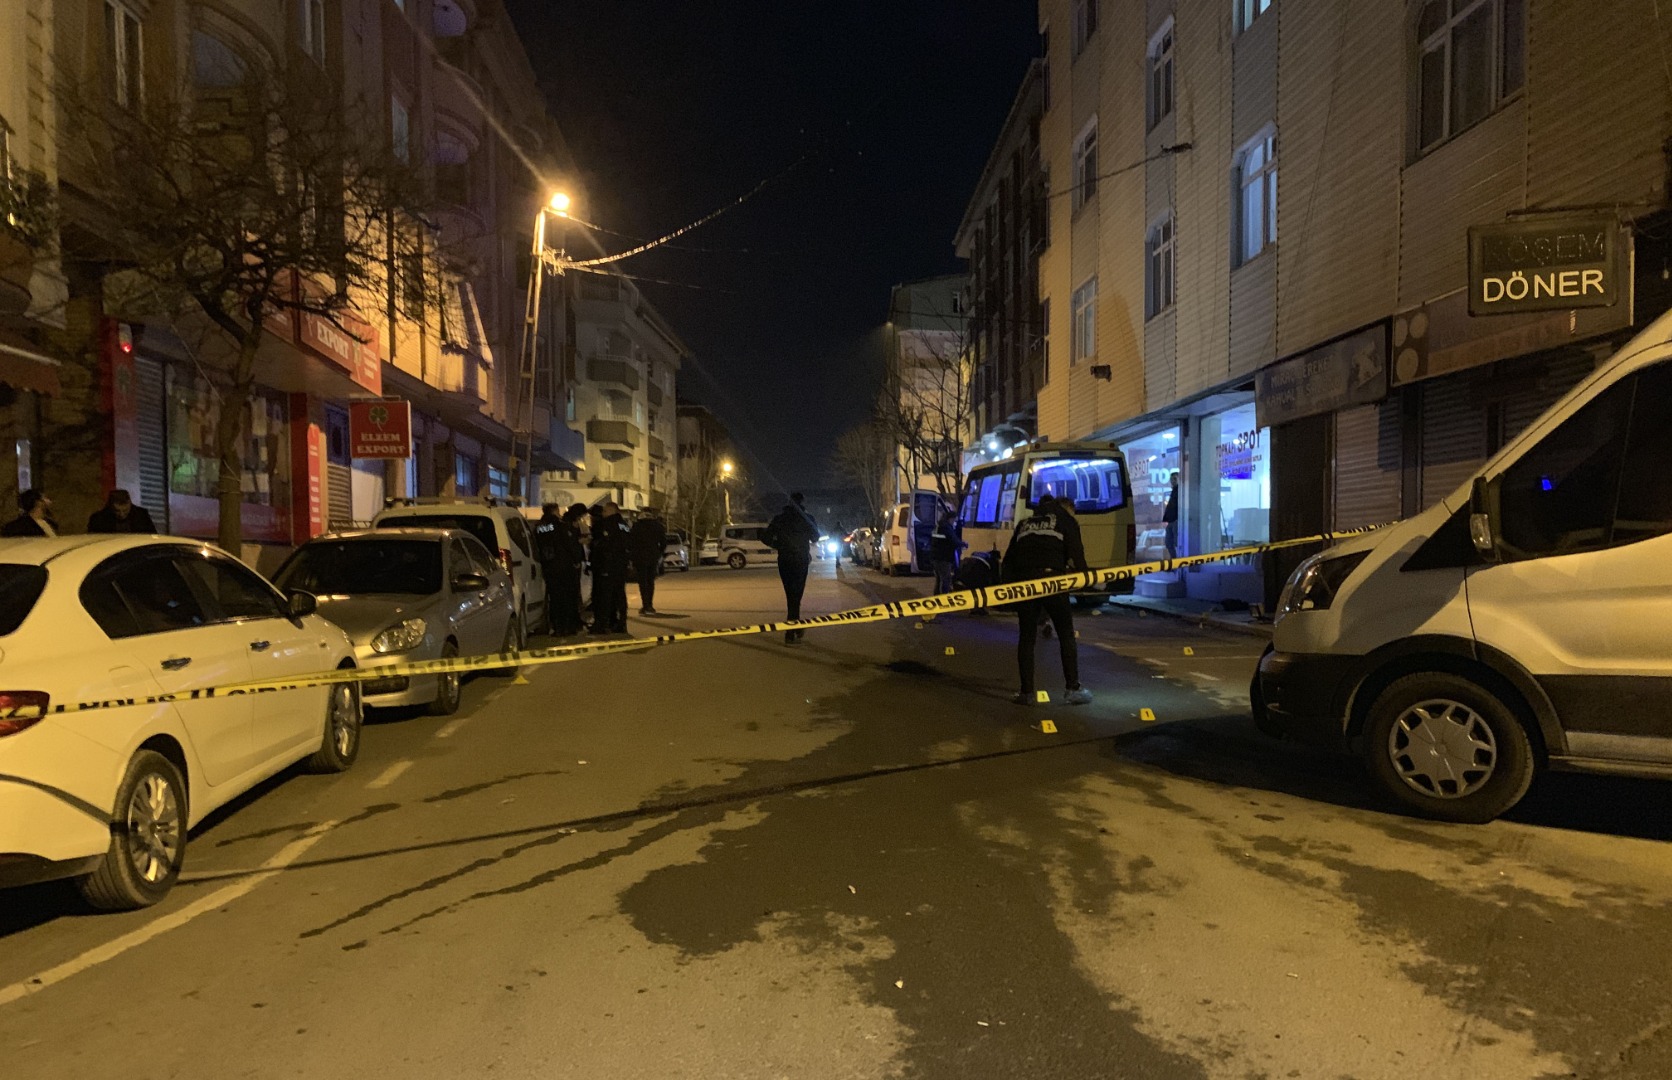 İstanbul’da 5 kişilik gruba silahlı saldırı: 1 ölü, 4 yaralı